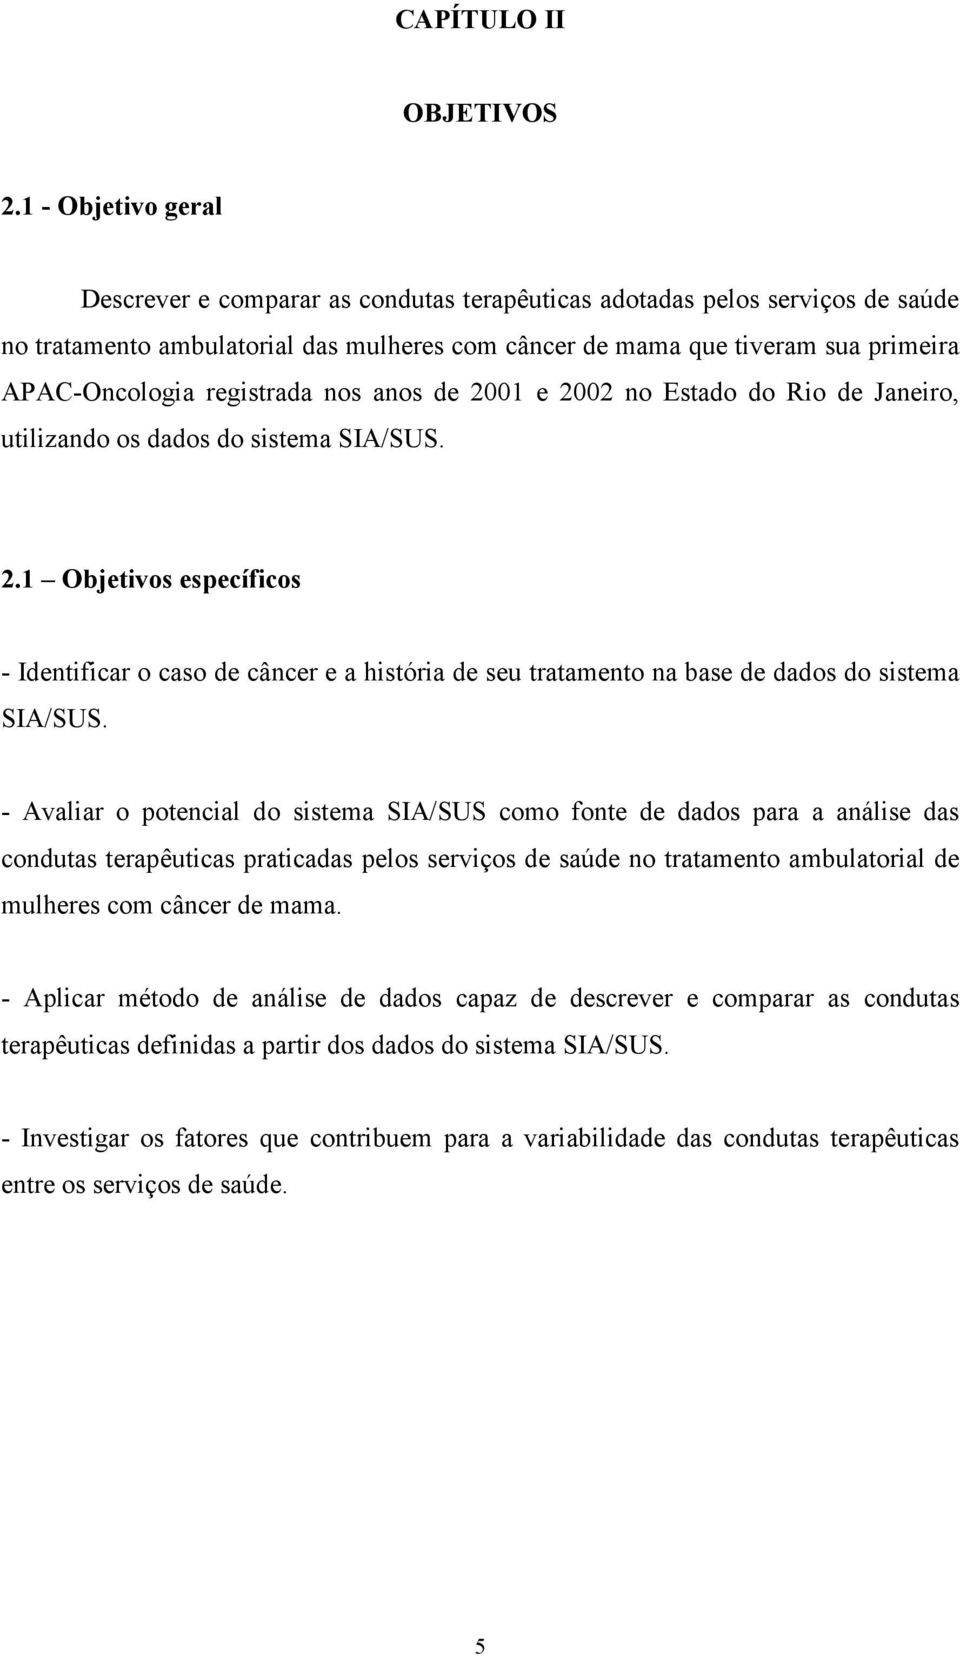 registrada nos anos de 2001 e 2002 no Estado do Rio de Janeiro, utilizando os dados do sistema SIA/SUS. 2.1 Objetivos específicos - Identificar o caso de câncer e a história de seu tratamento na base de dados do sistema SIA/SUS.